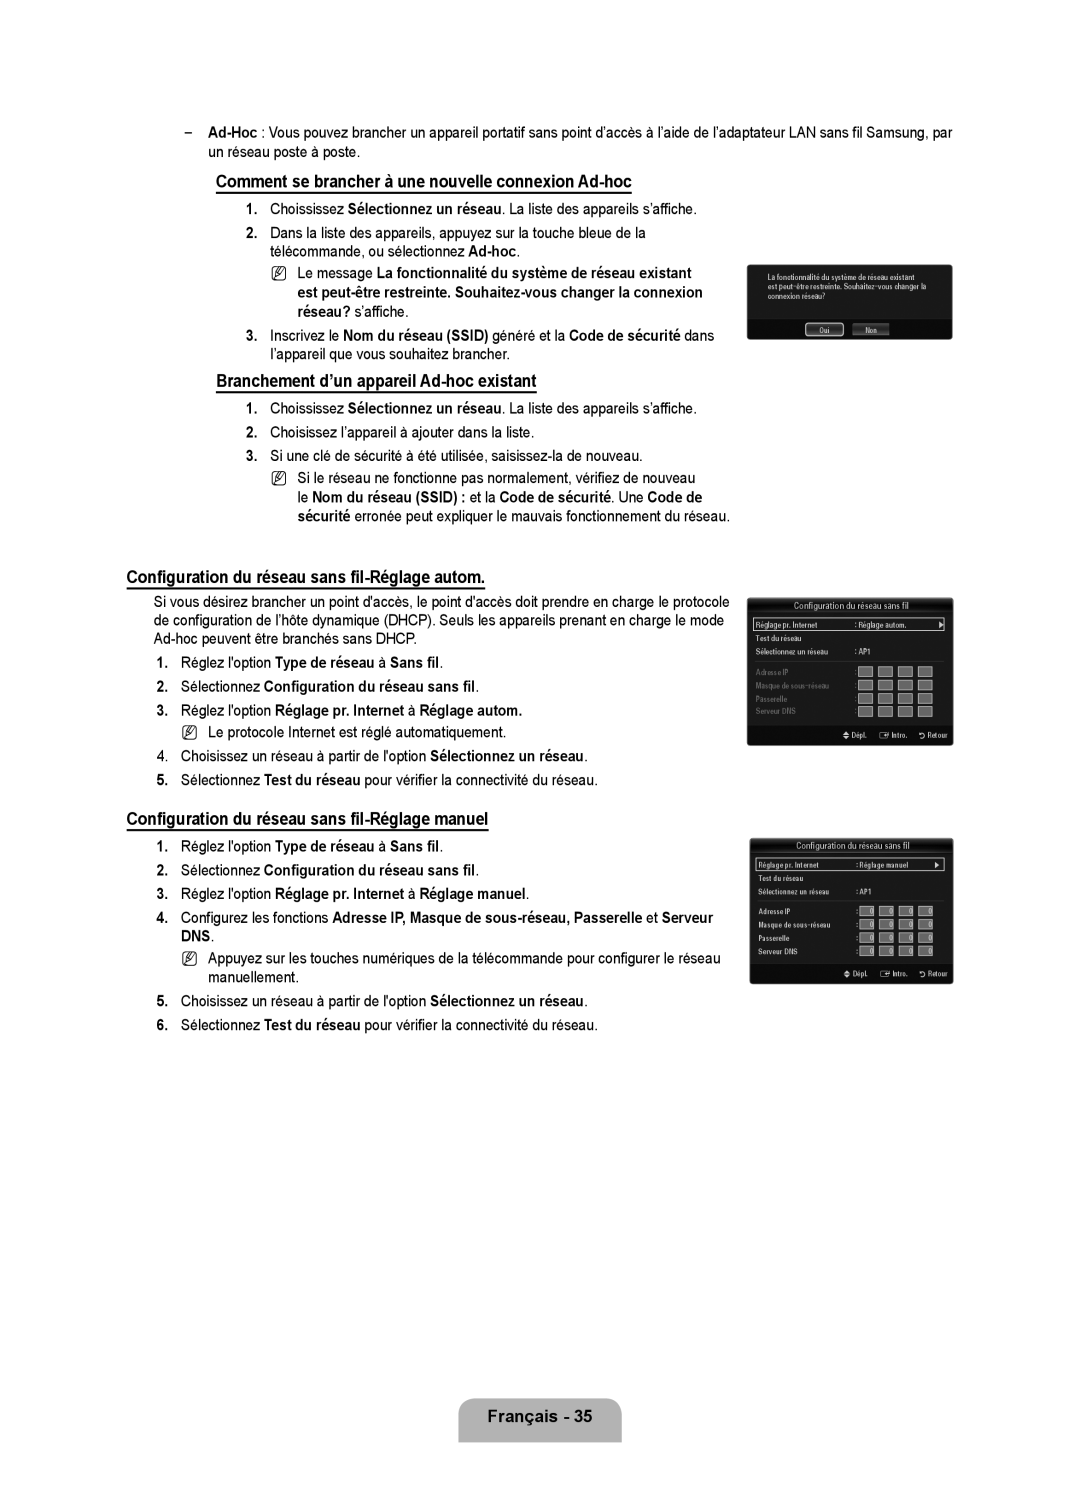 Samsung LN6B60 user manual Comment se brancher à une nouvelle connexion Ad-hoc, Branchement d’un appareil Ad-hoc existant 